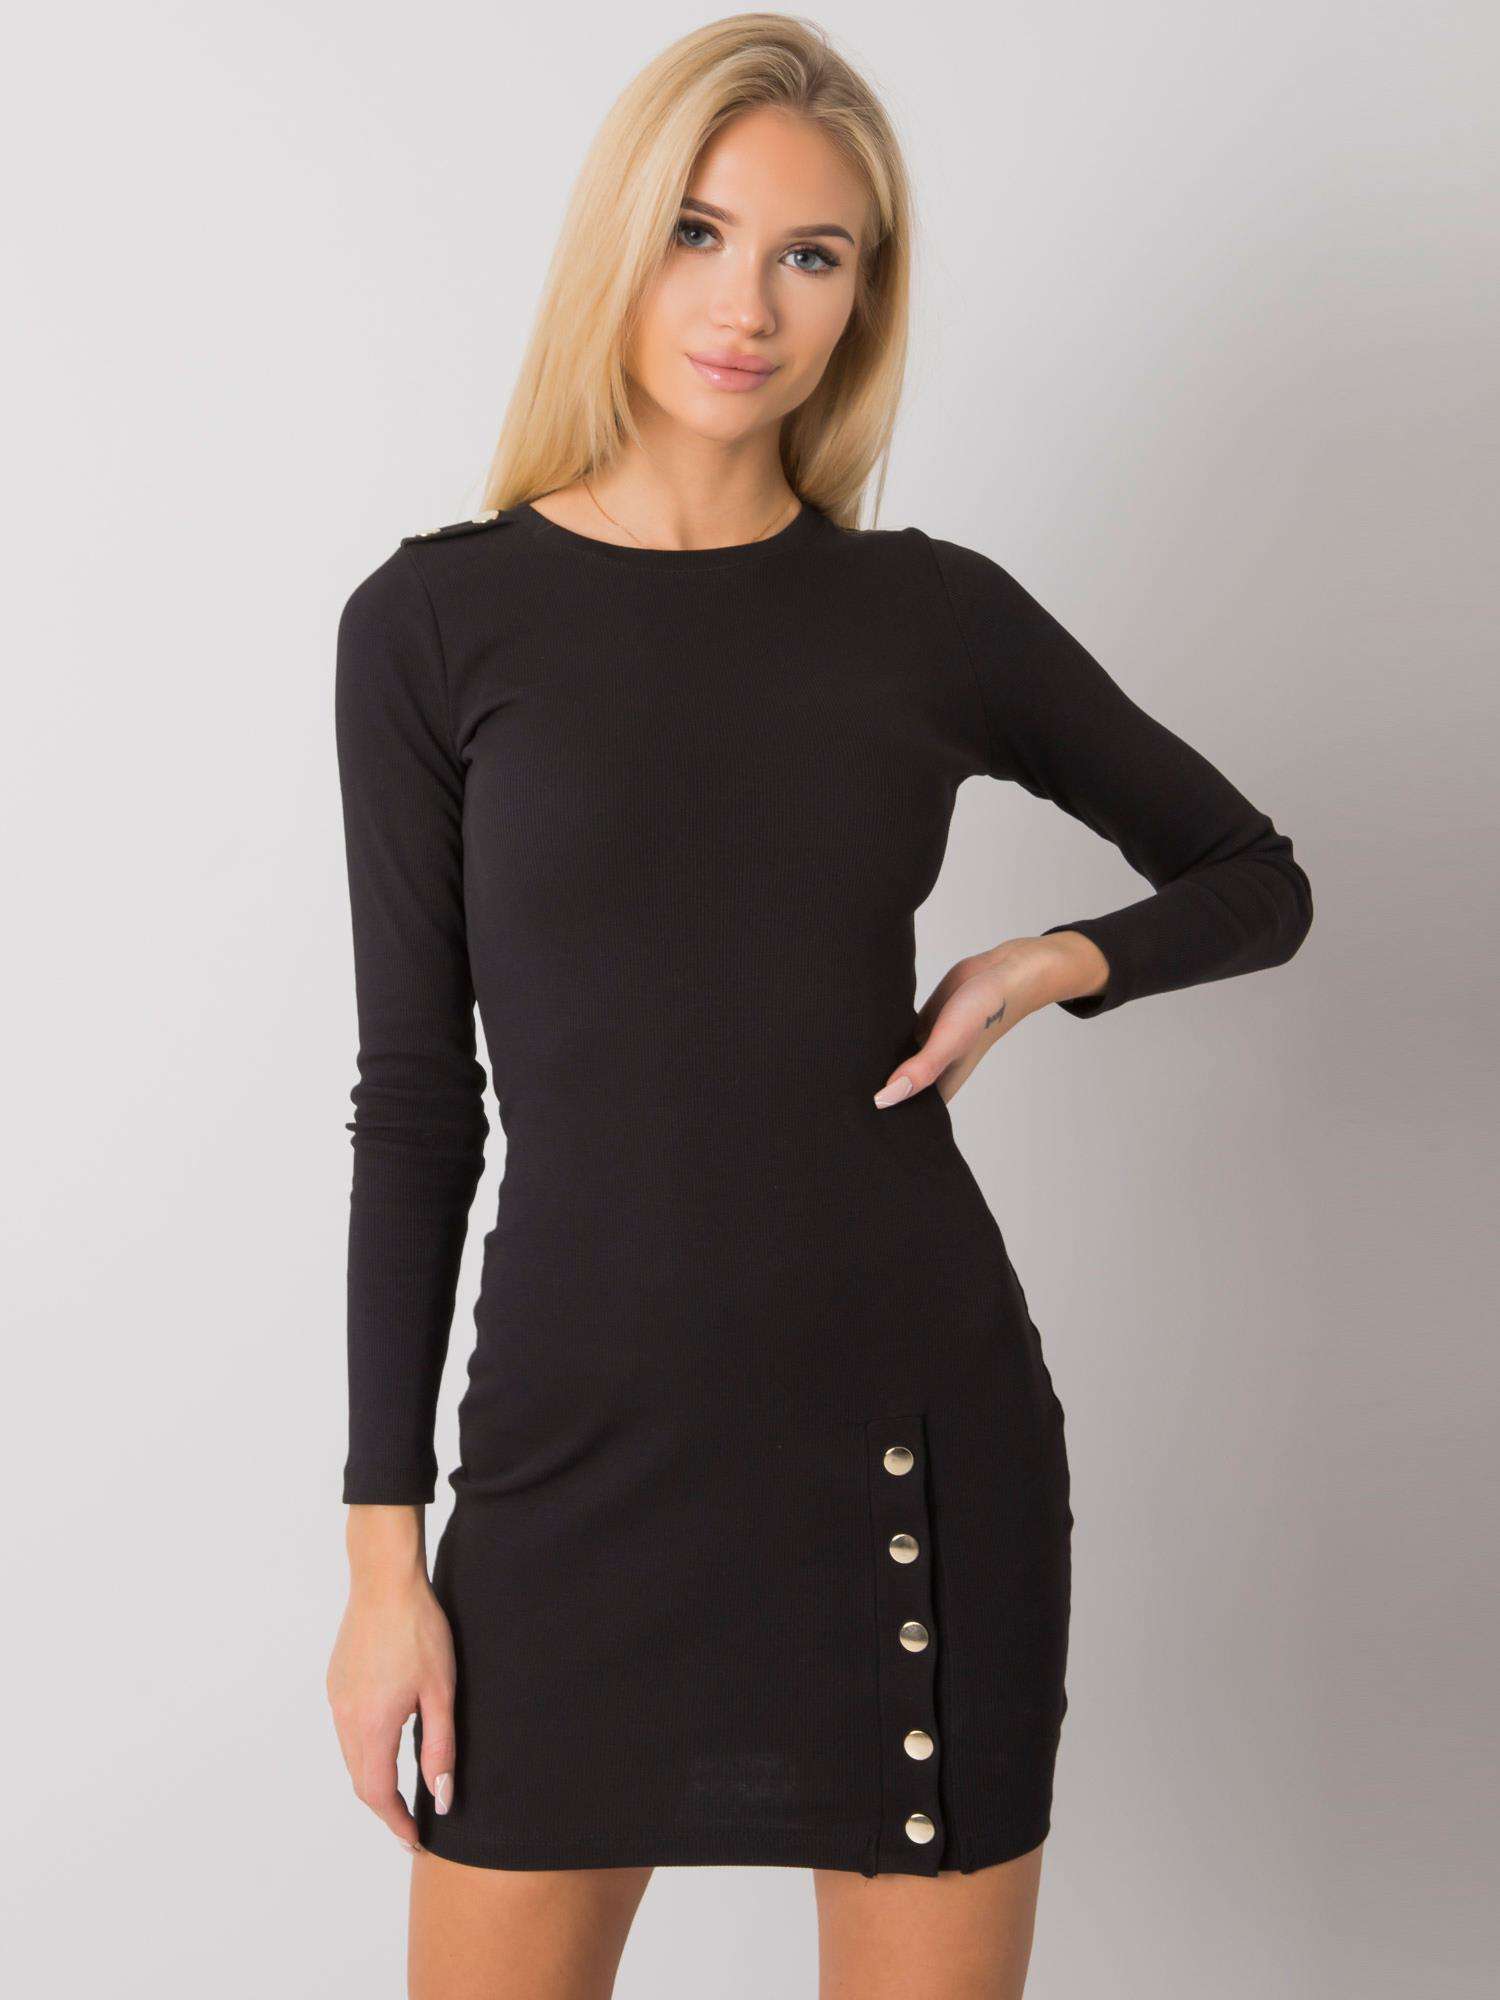 Černé dámské mini šaty s dlouhými rukávy RV-SK-7246.29-black Velikost: M